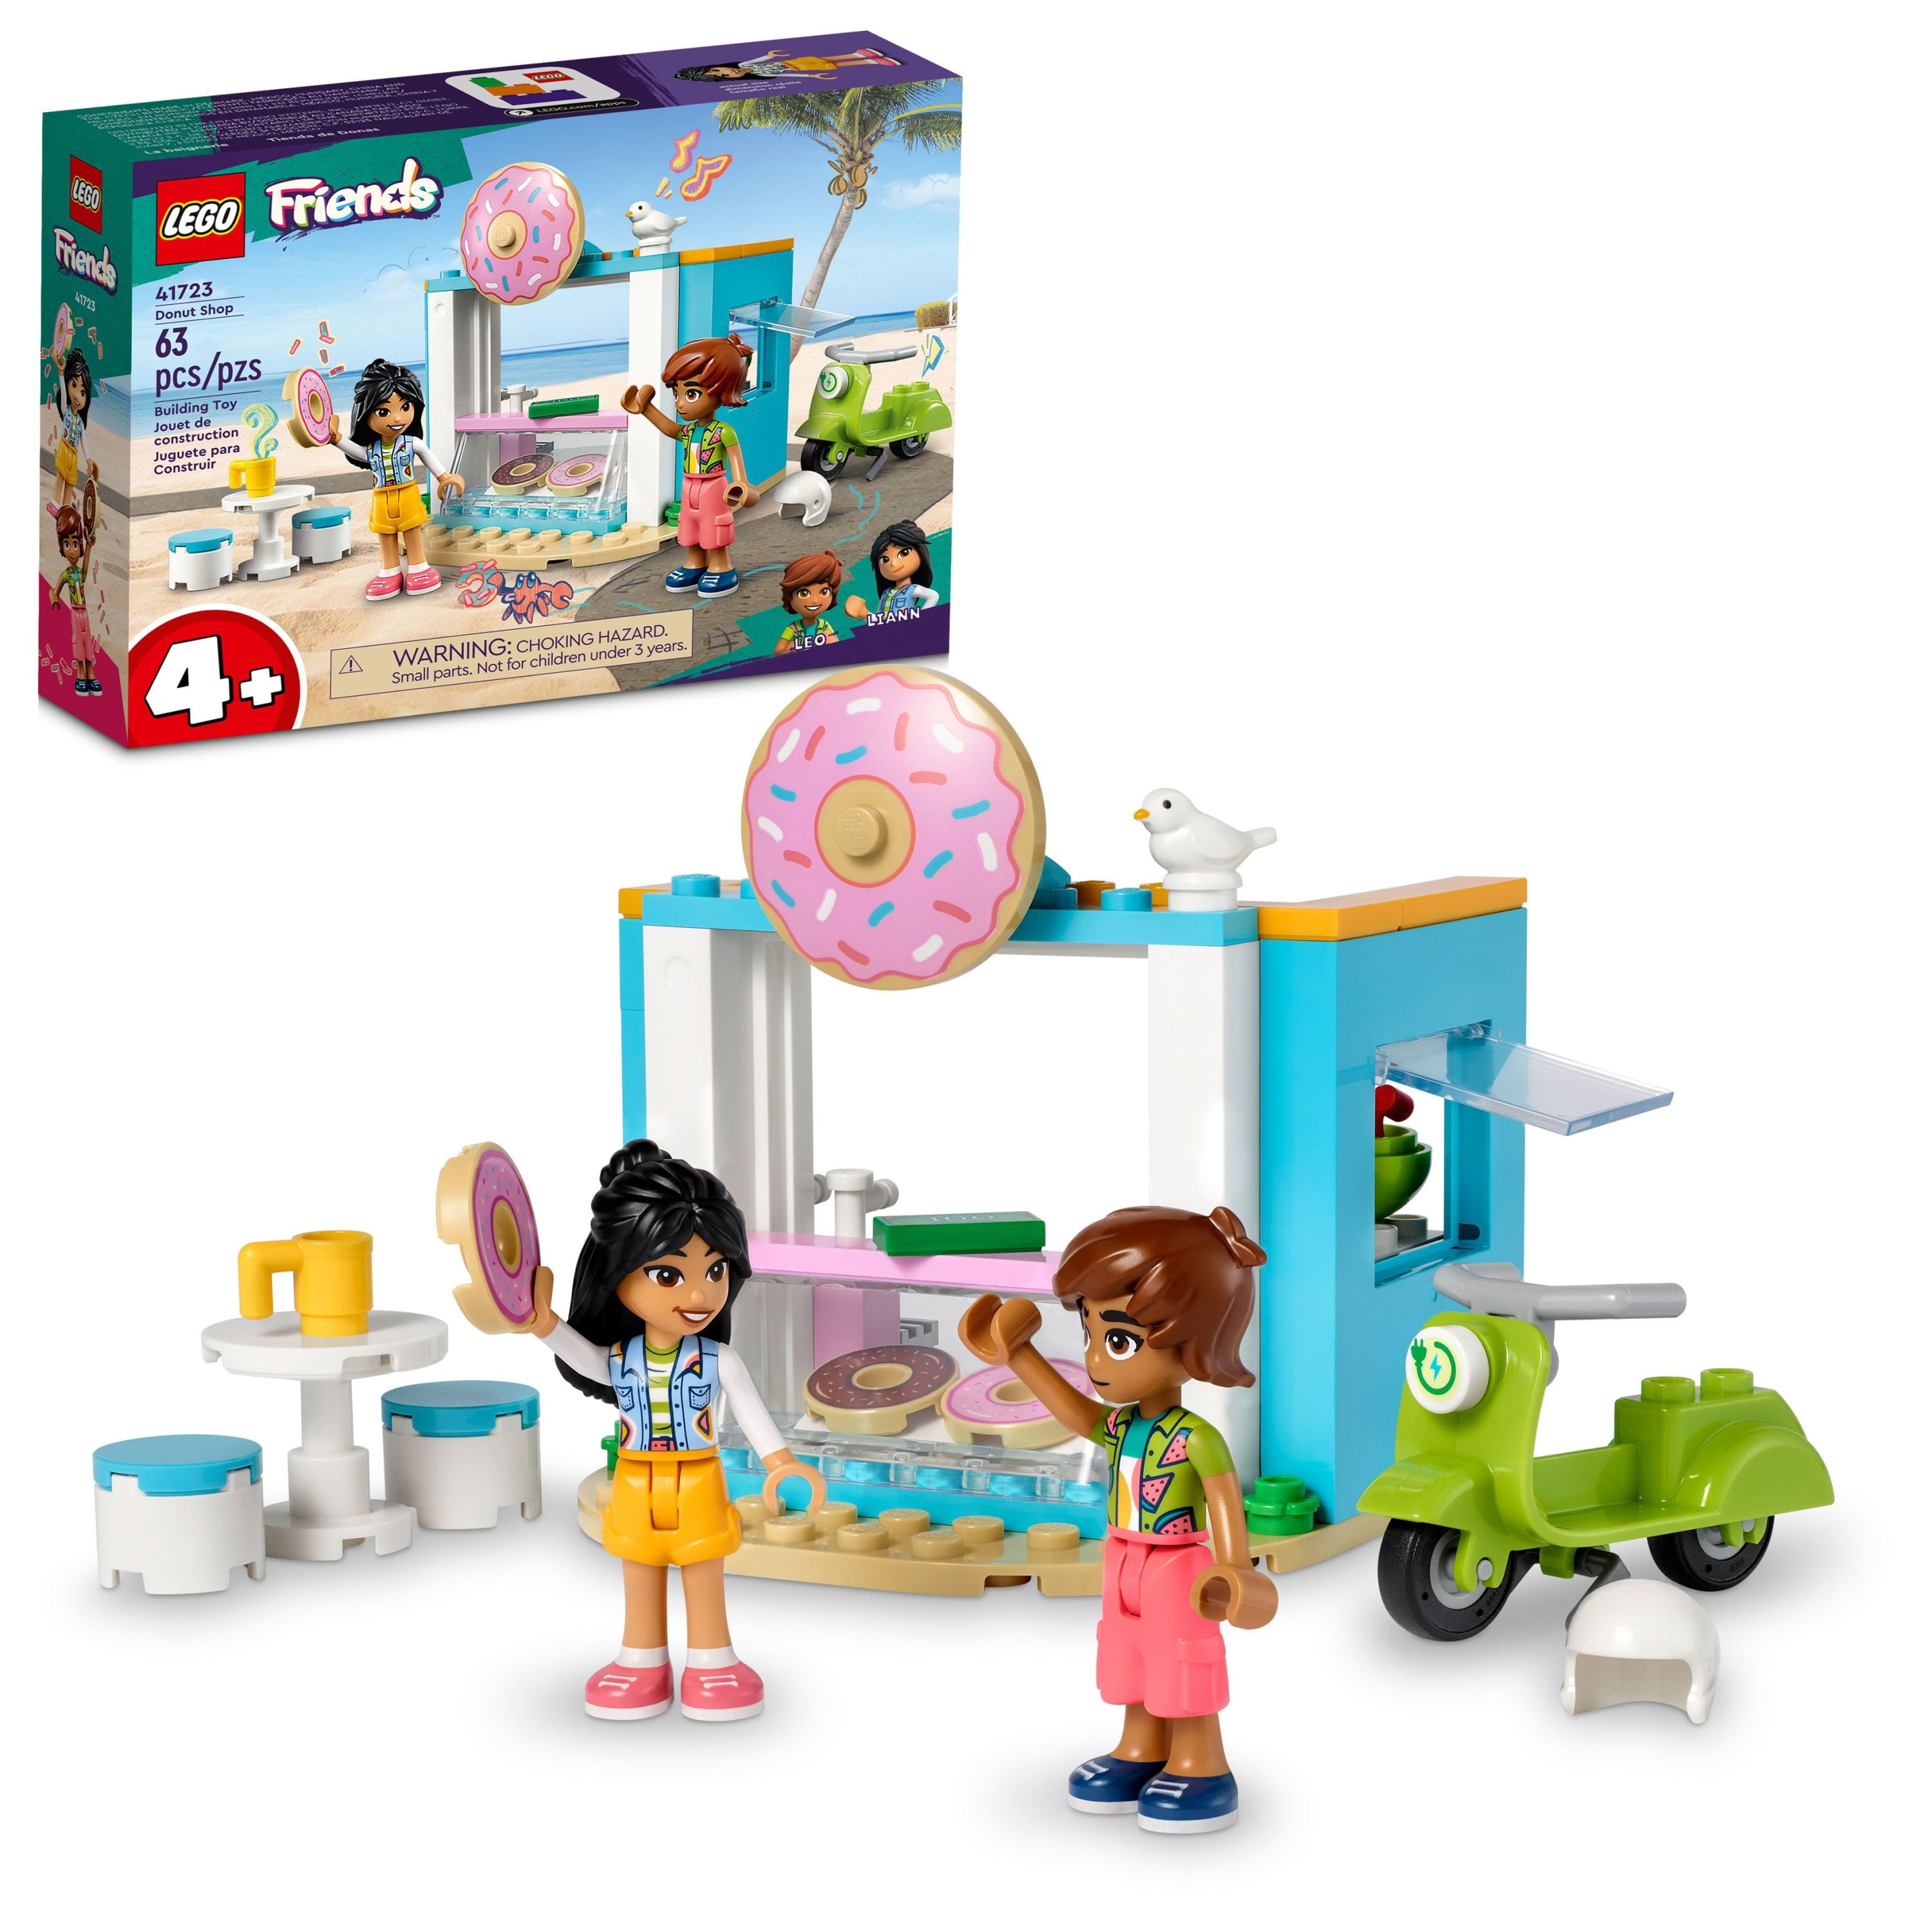 The Minifigure Store - Authorised LEGO Retailer